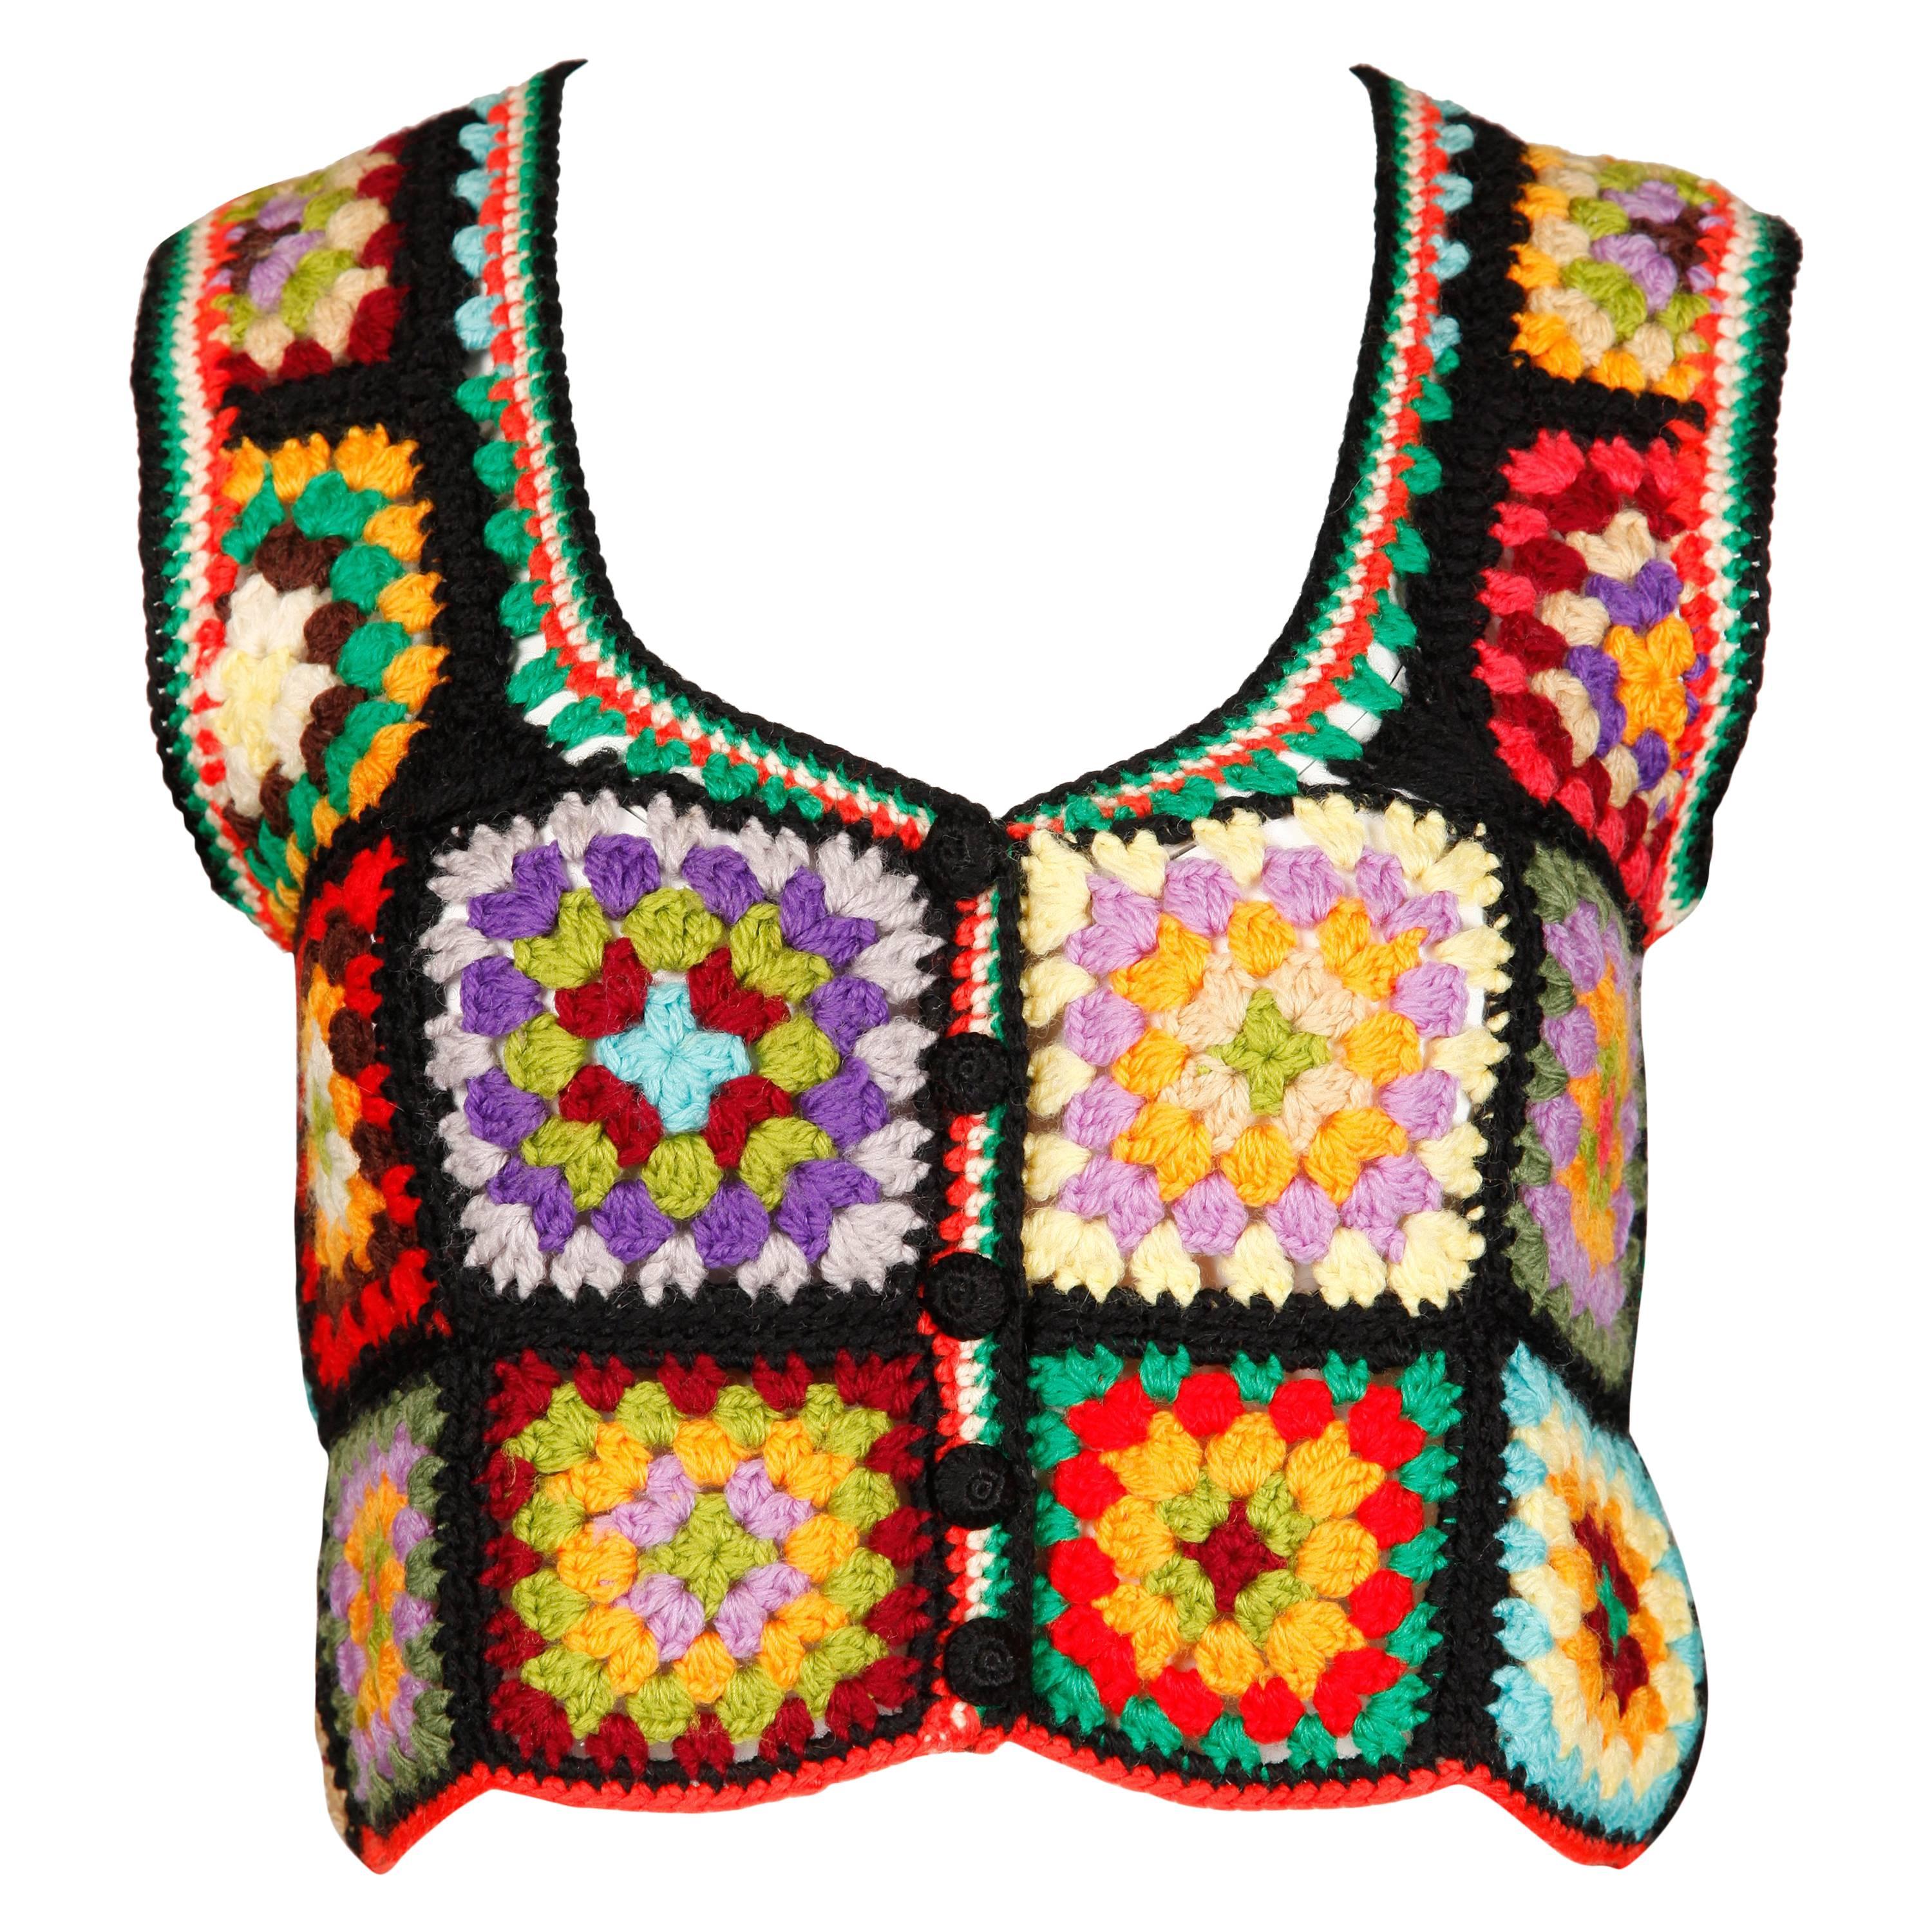 Adolfo for I. Magnin 1970s Vintage Wool Granny Squares Hand Crochet Vest Top